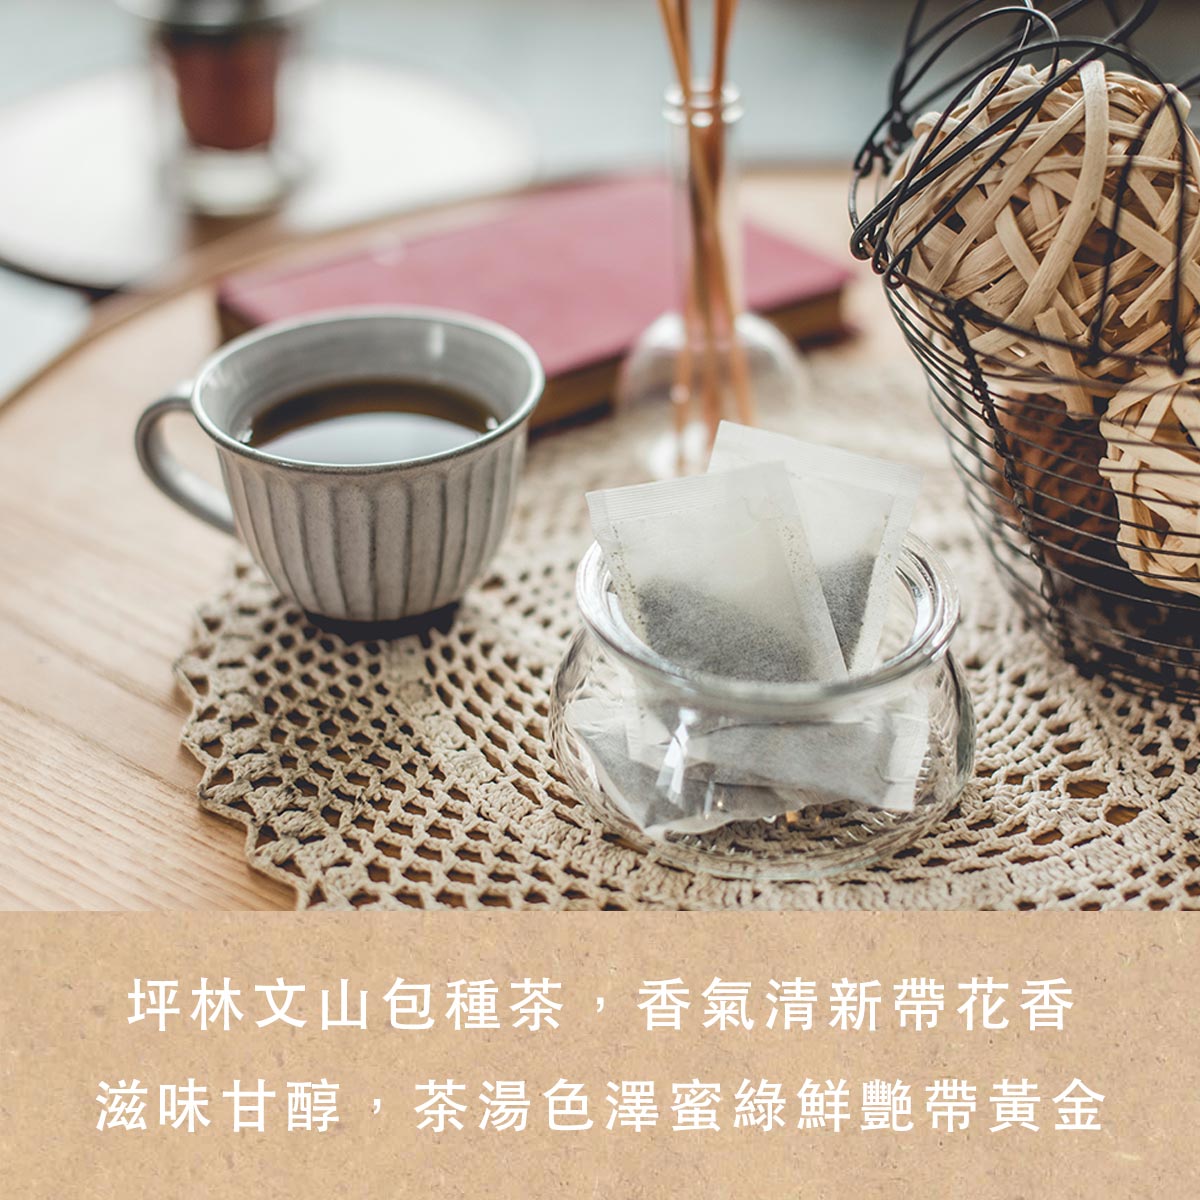 最受大陸人歡迎的禮物推薦！大陸人喜歡的台灣經典零食送禮推薦人氣包種茶包